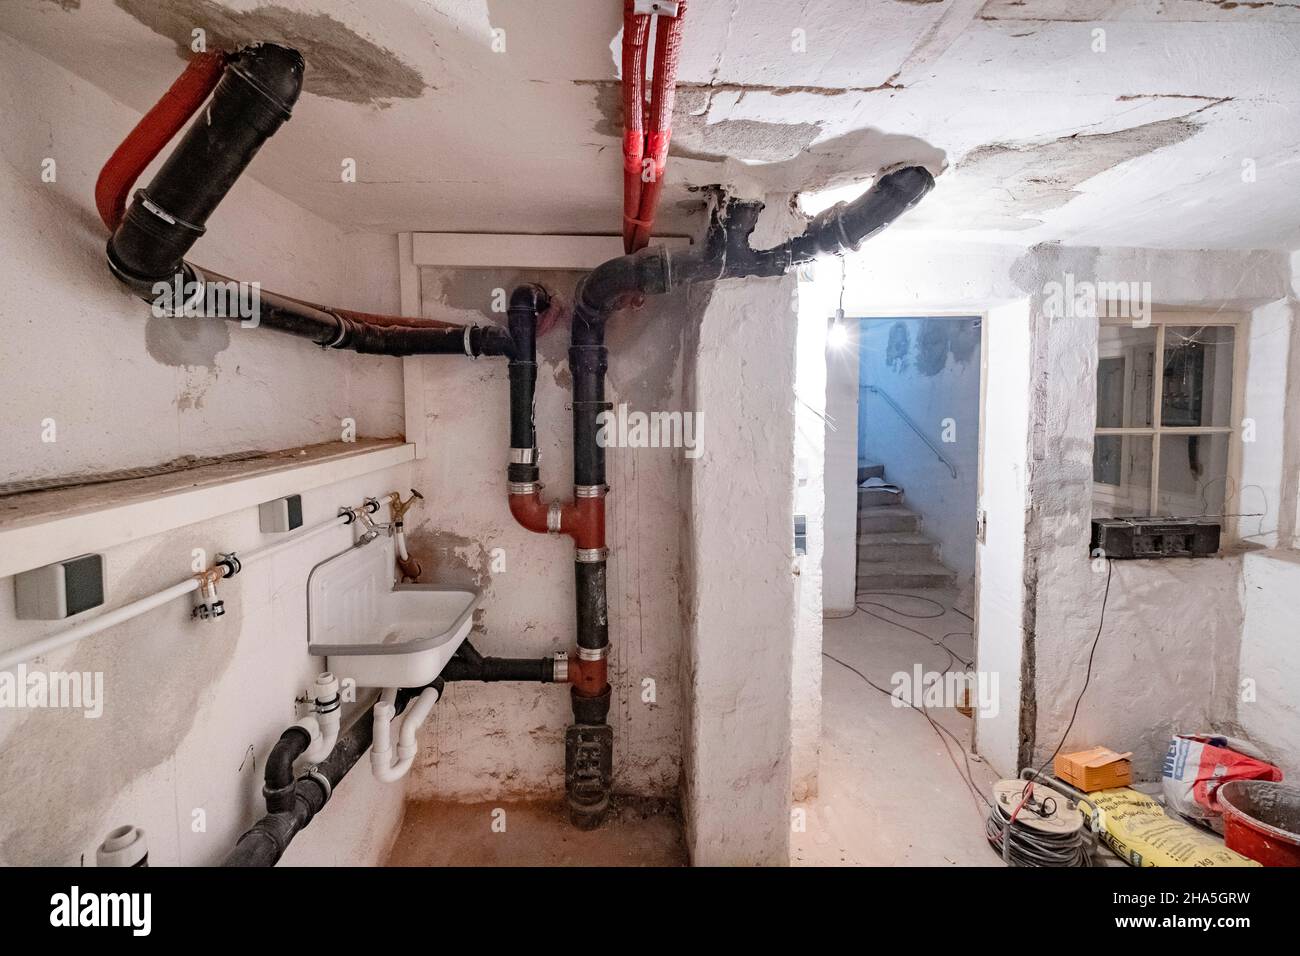 chantier de construction, réaménagement et rénovation d'un appartement, chambre vide d'une buanderie dans le sous-sol avec de vieux tuyaux d'égout Banque D'Images